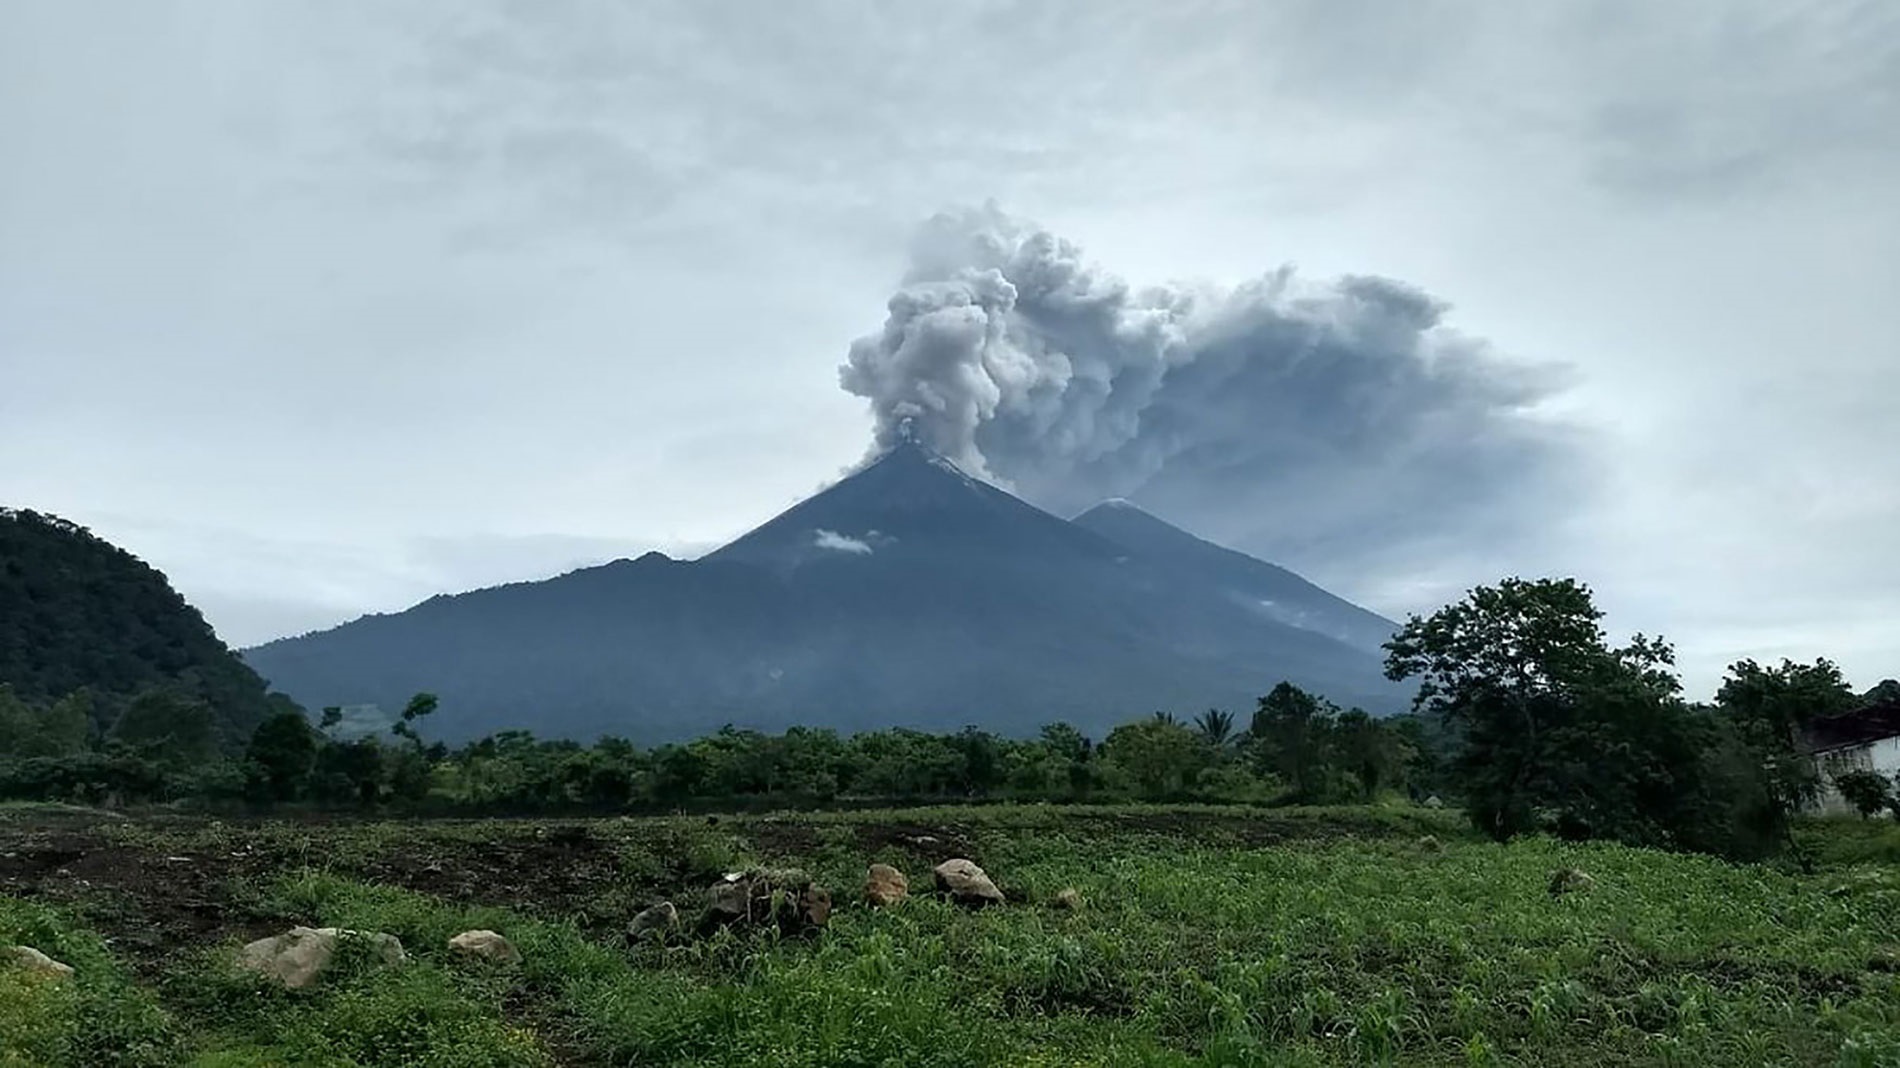  Guatemala agradece ayuda internacional para afectados por erupción